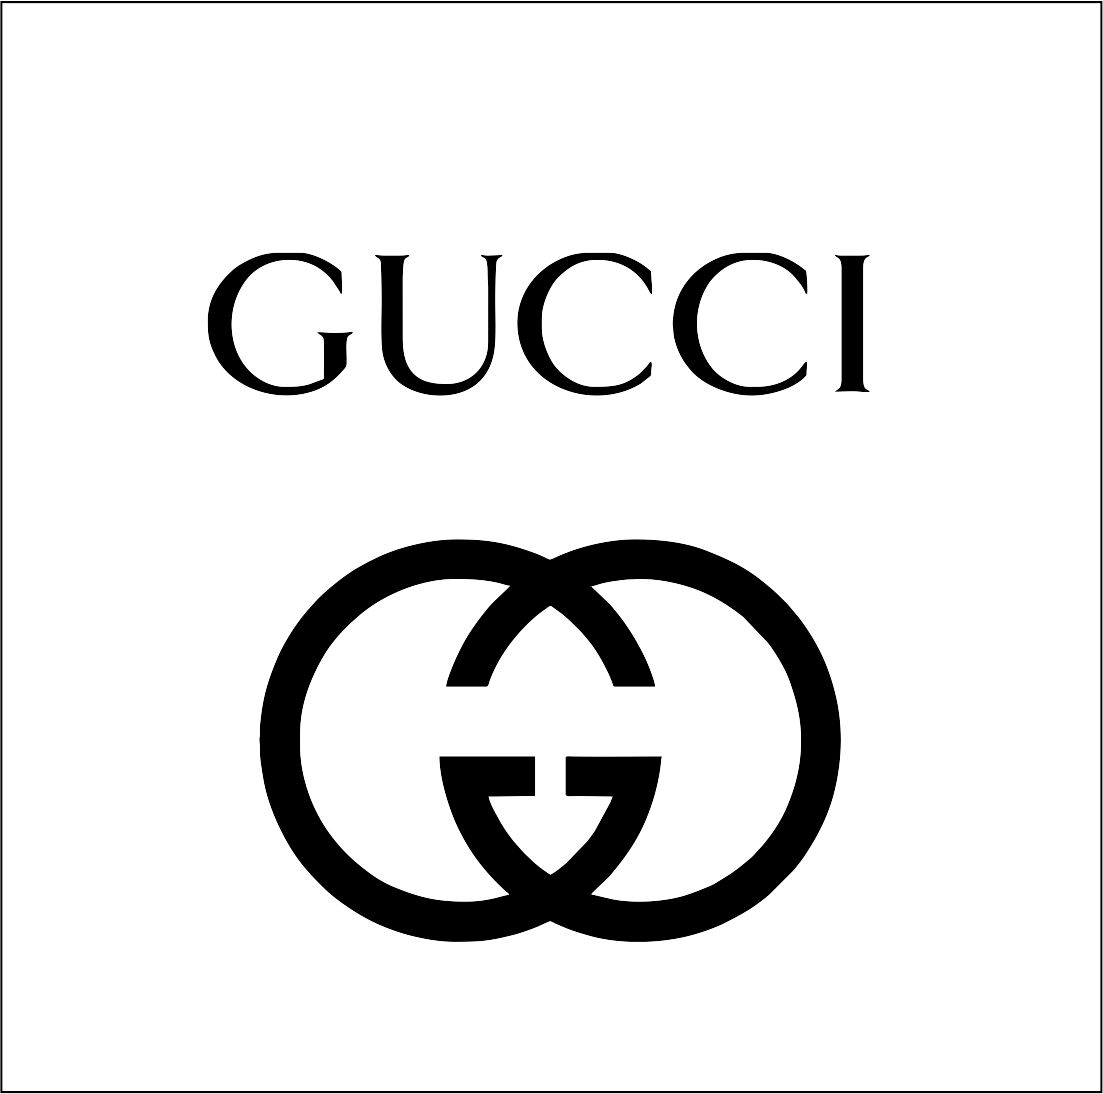 Gucci logo | SVGprinted